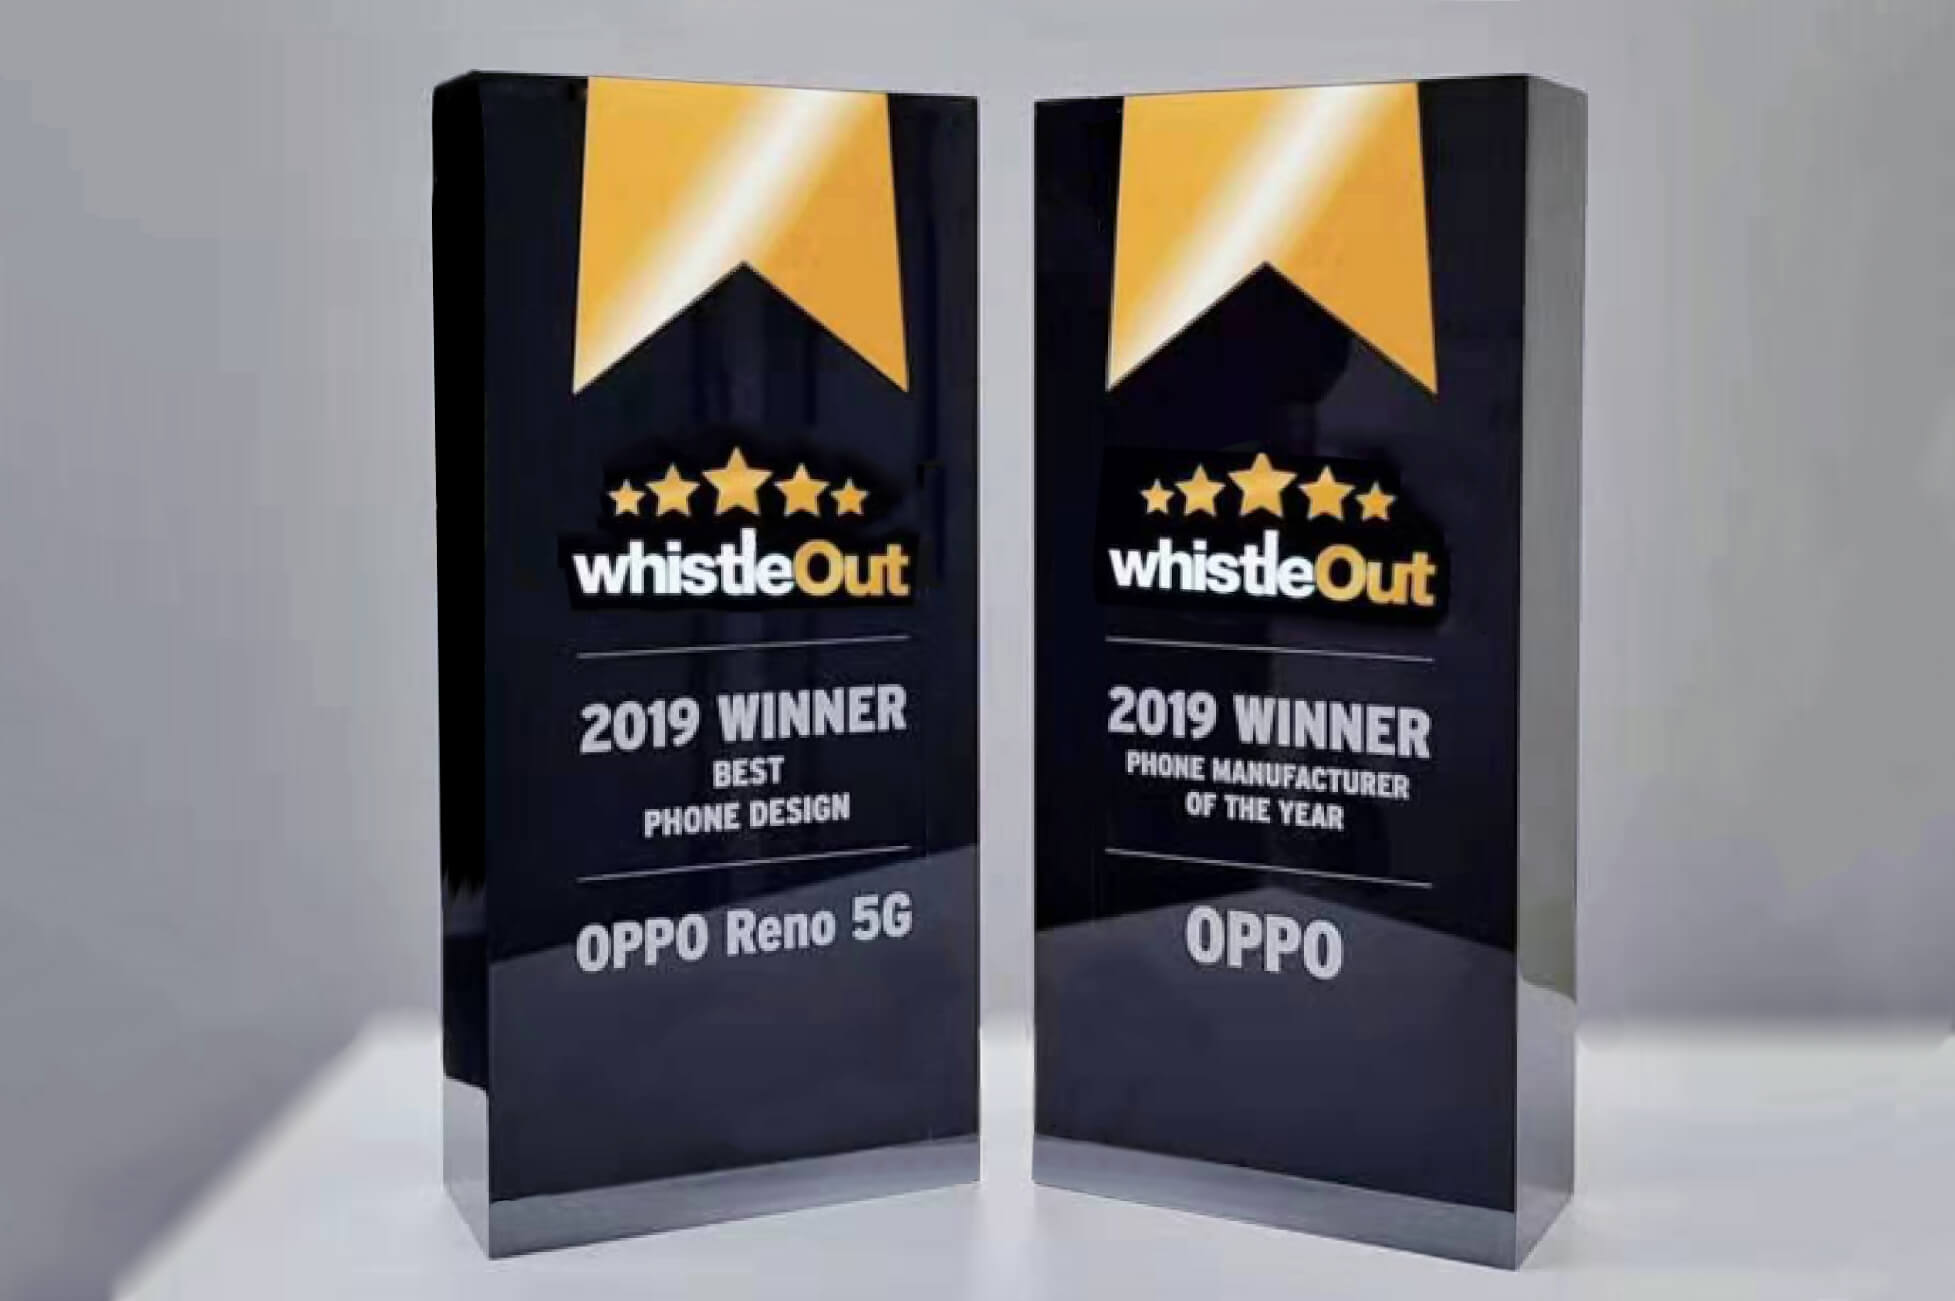 OPPO、2019年WhistleOut最優秀スマートフォンメーカーおよび最優秀スマートフォンデザインに選出